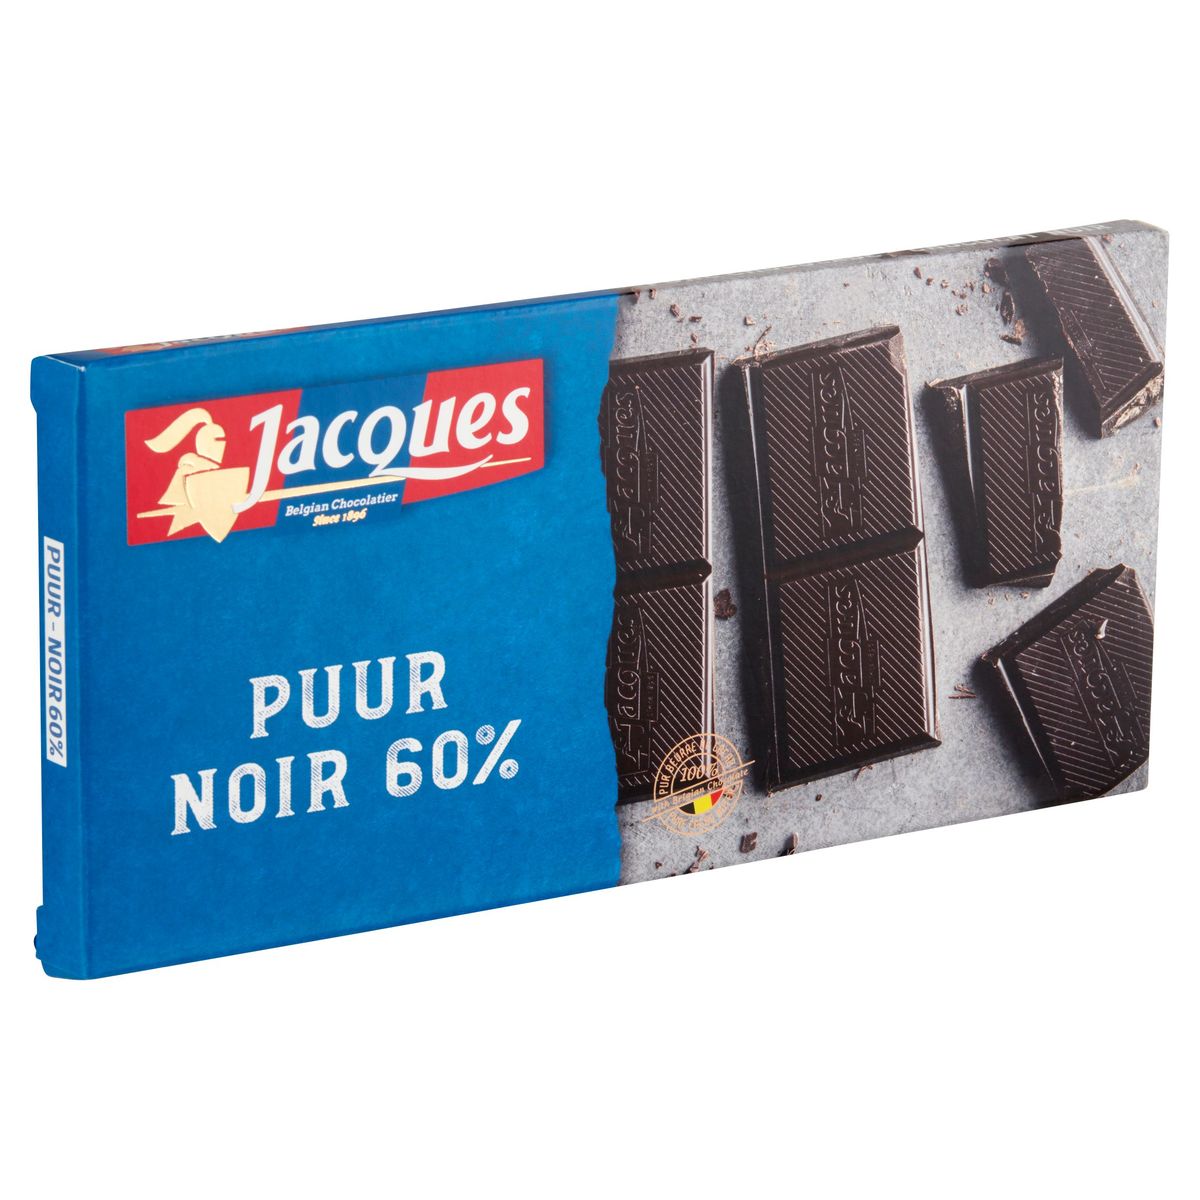 Jacques Noir 60% 180 g